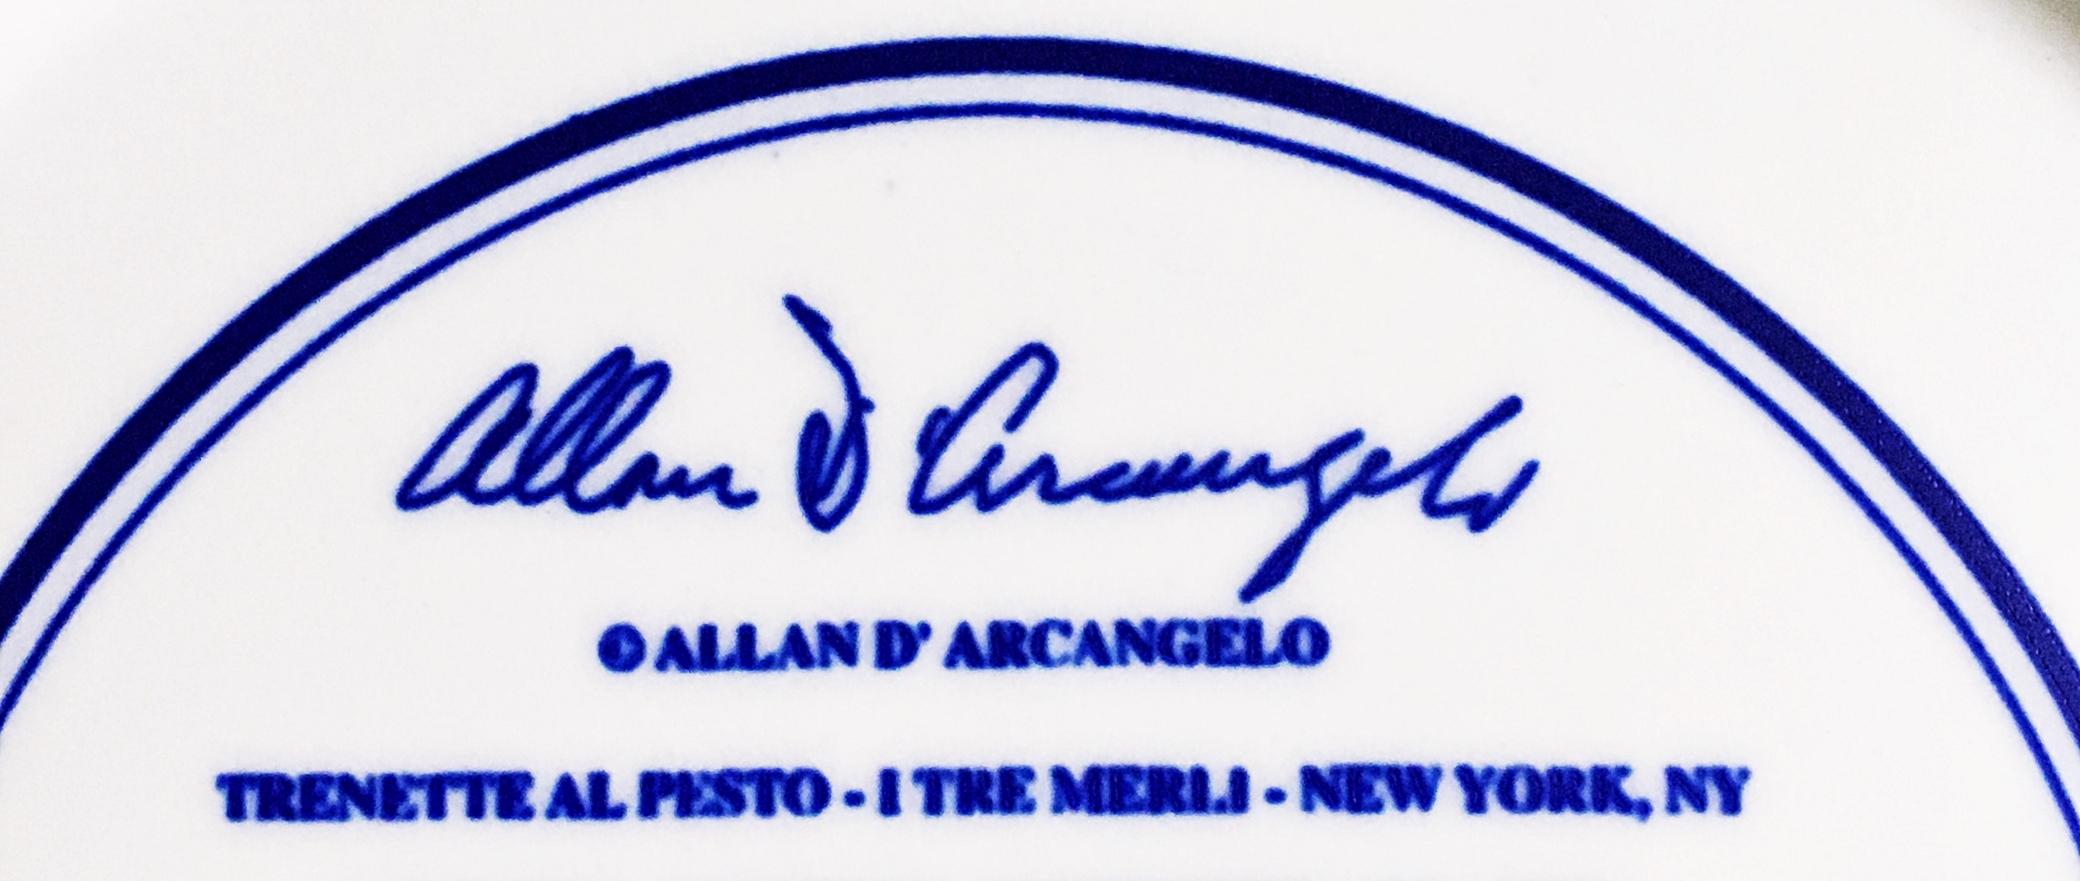 Trenette Al Pesto - I Tre Merli - New York, NY For Sale 1